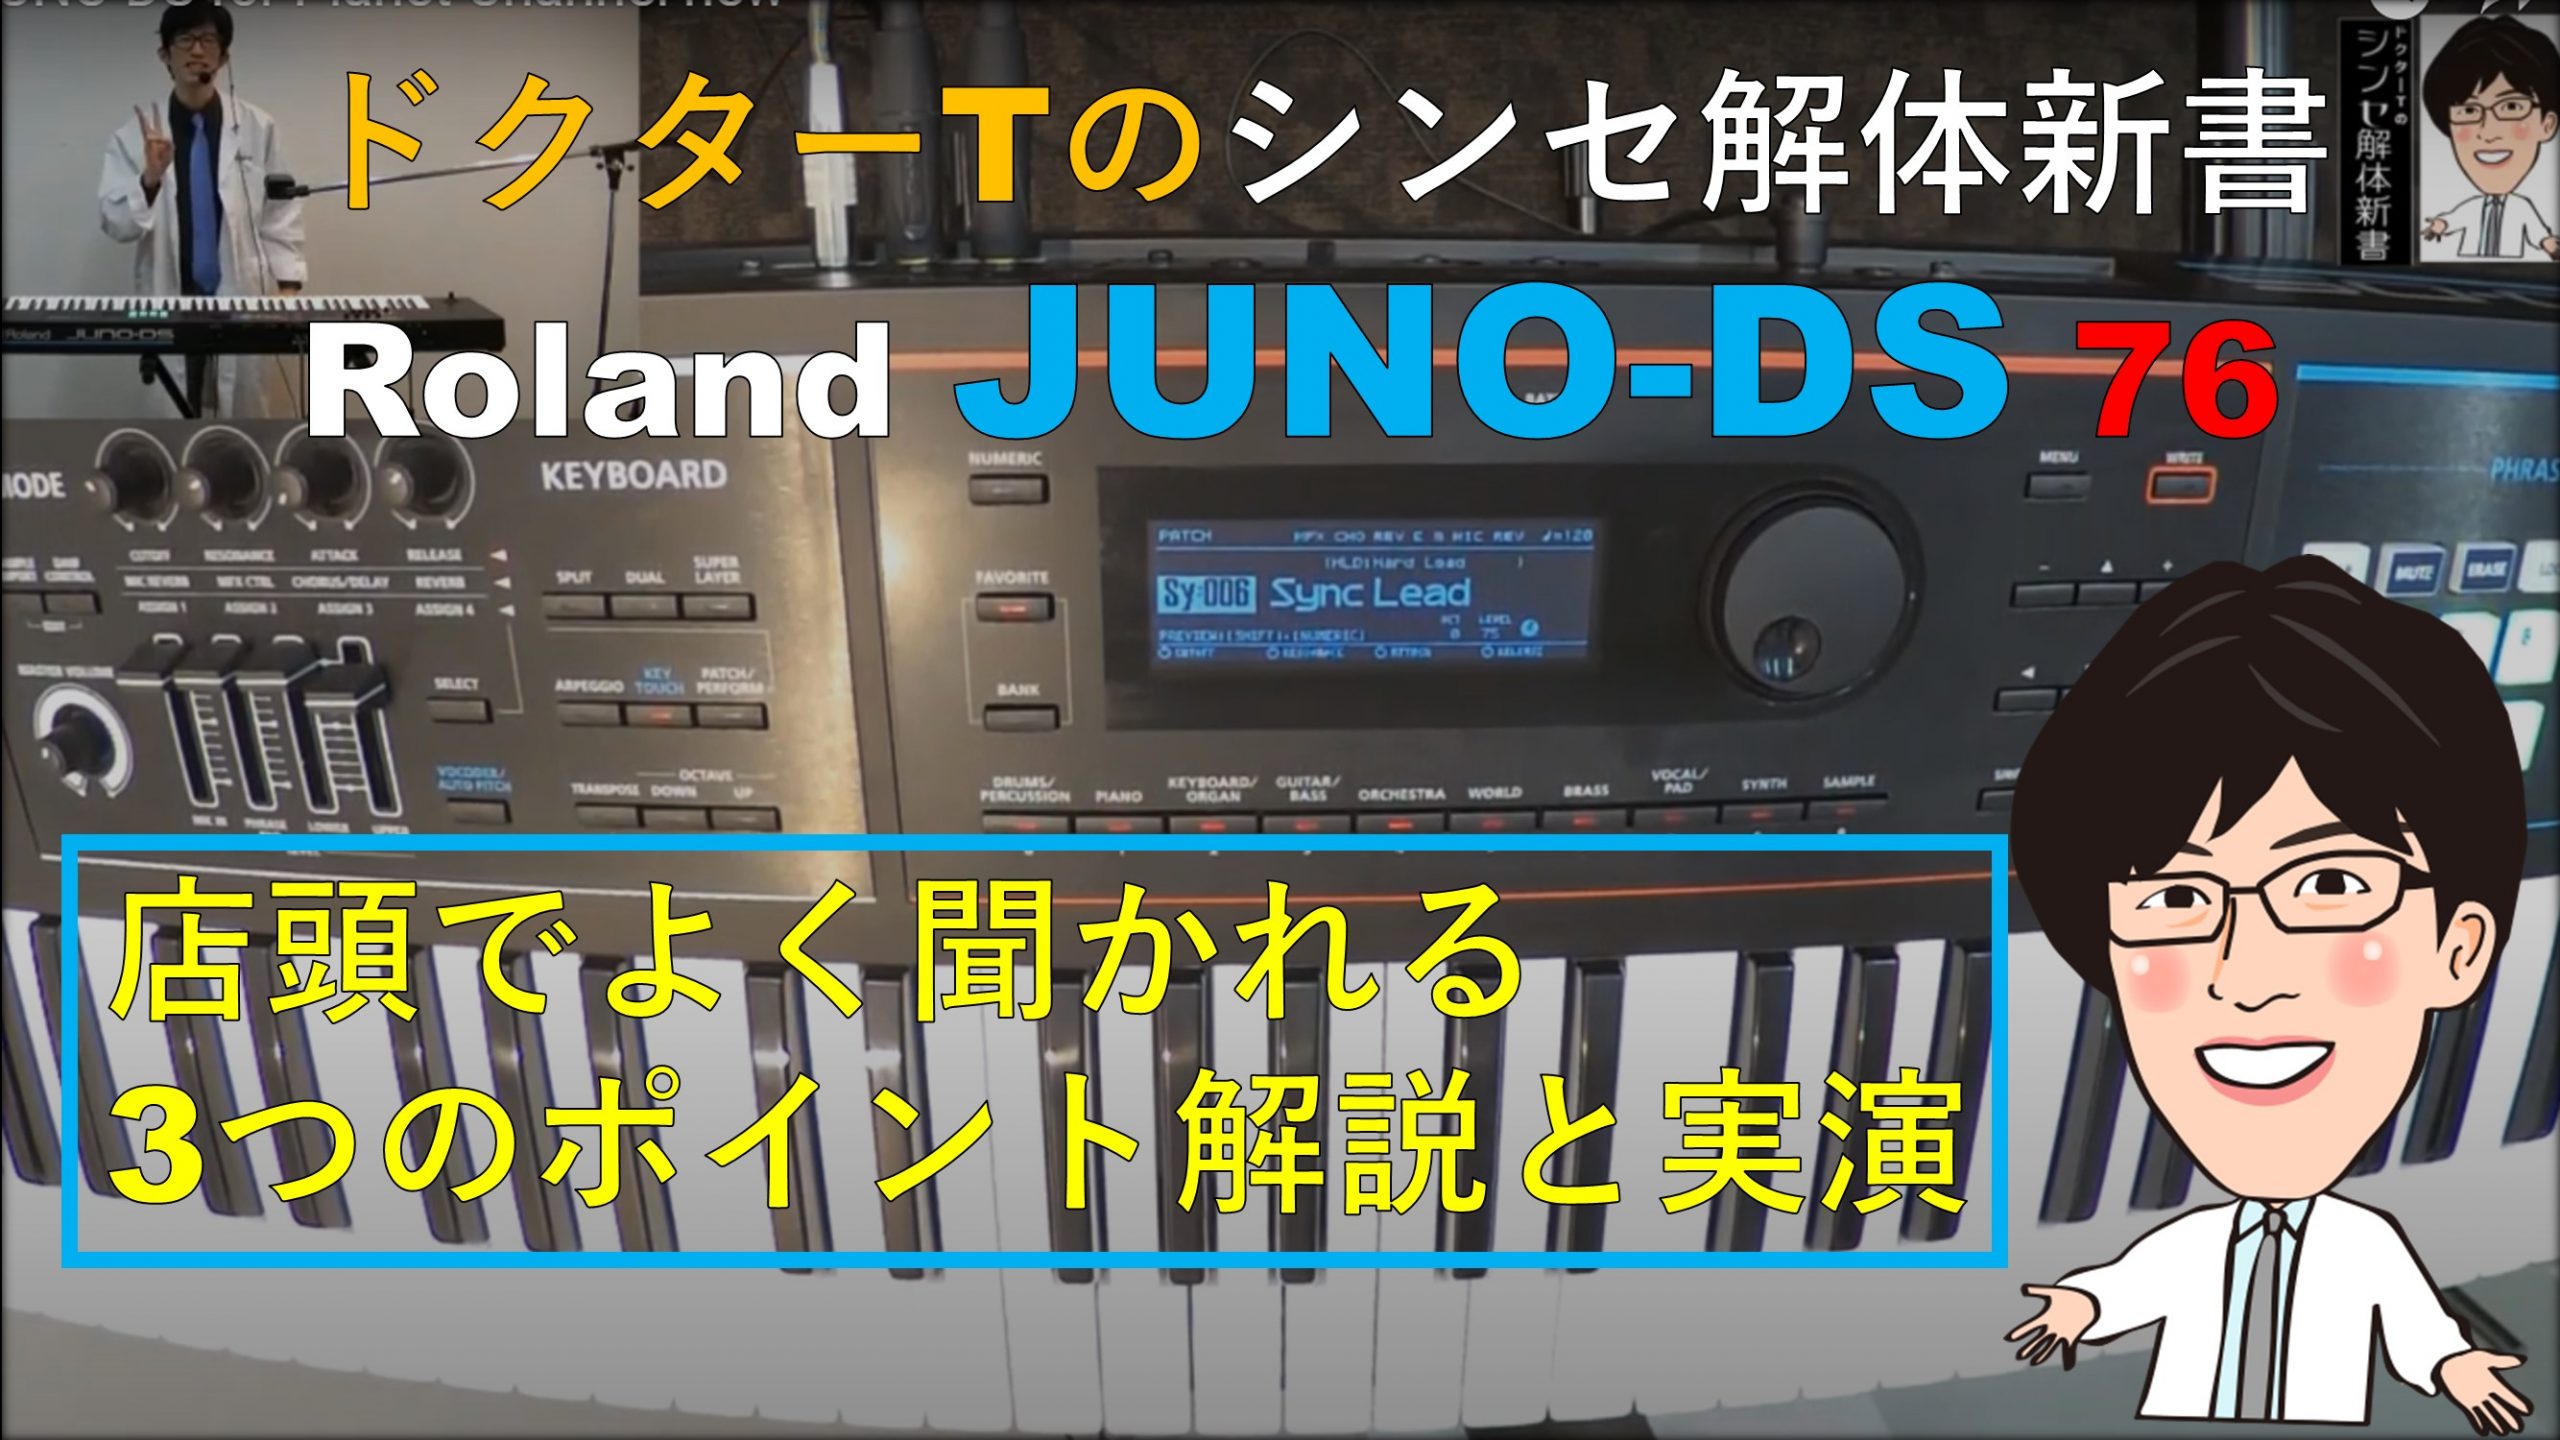 *Rolandの最新シンセ『JUNO-DS』シリーズ入荷！好評発売中！！！ Roland ( ローランド ) は、「高音質」「軽量」「簡単操作」の基本コンセプトはそのままに全てが強化された JUNO シリーズの最新モデル JUNO-DS76を展示中！！ **「簡単！」「軽い！」「音がイイ！」がコンセ […]